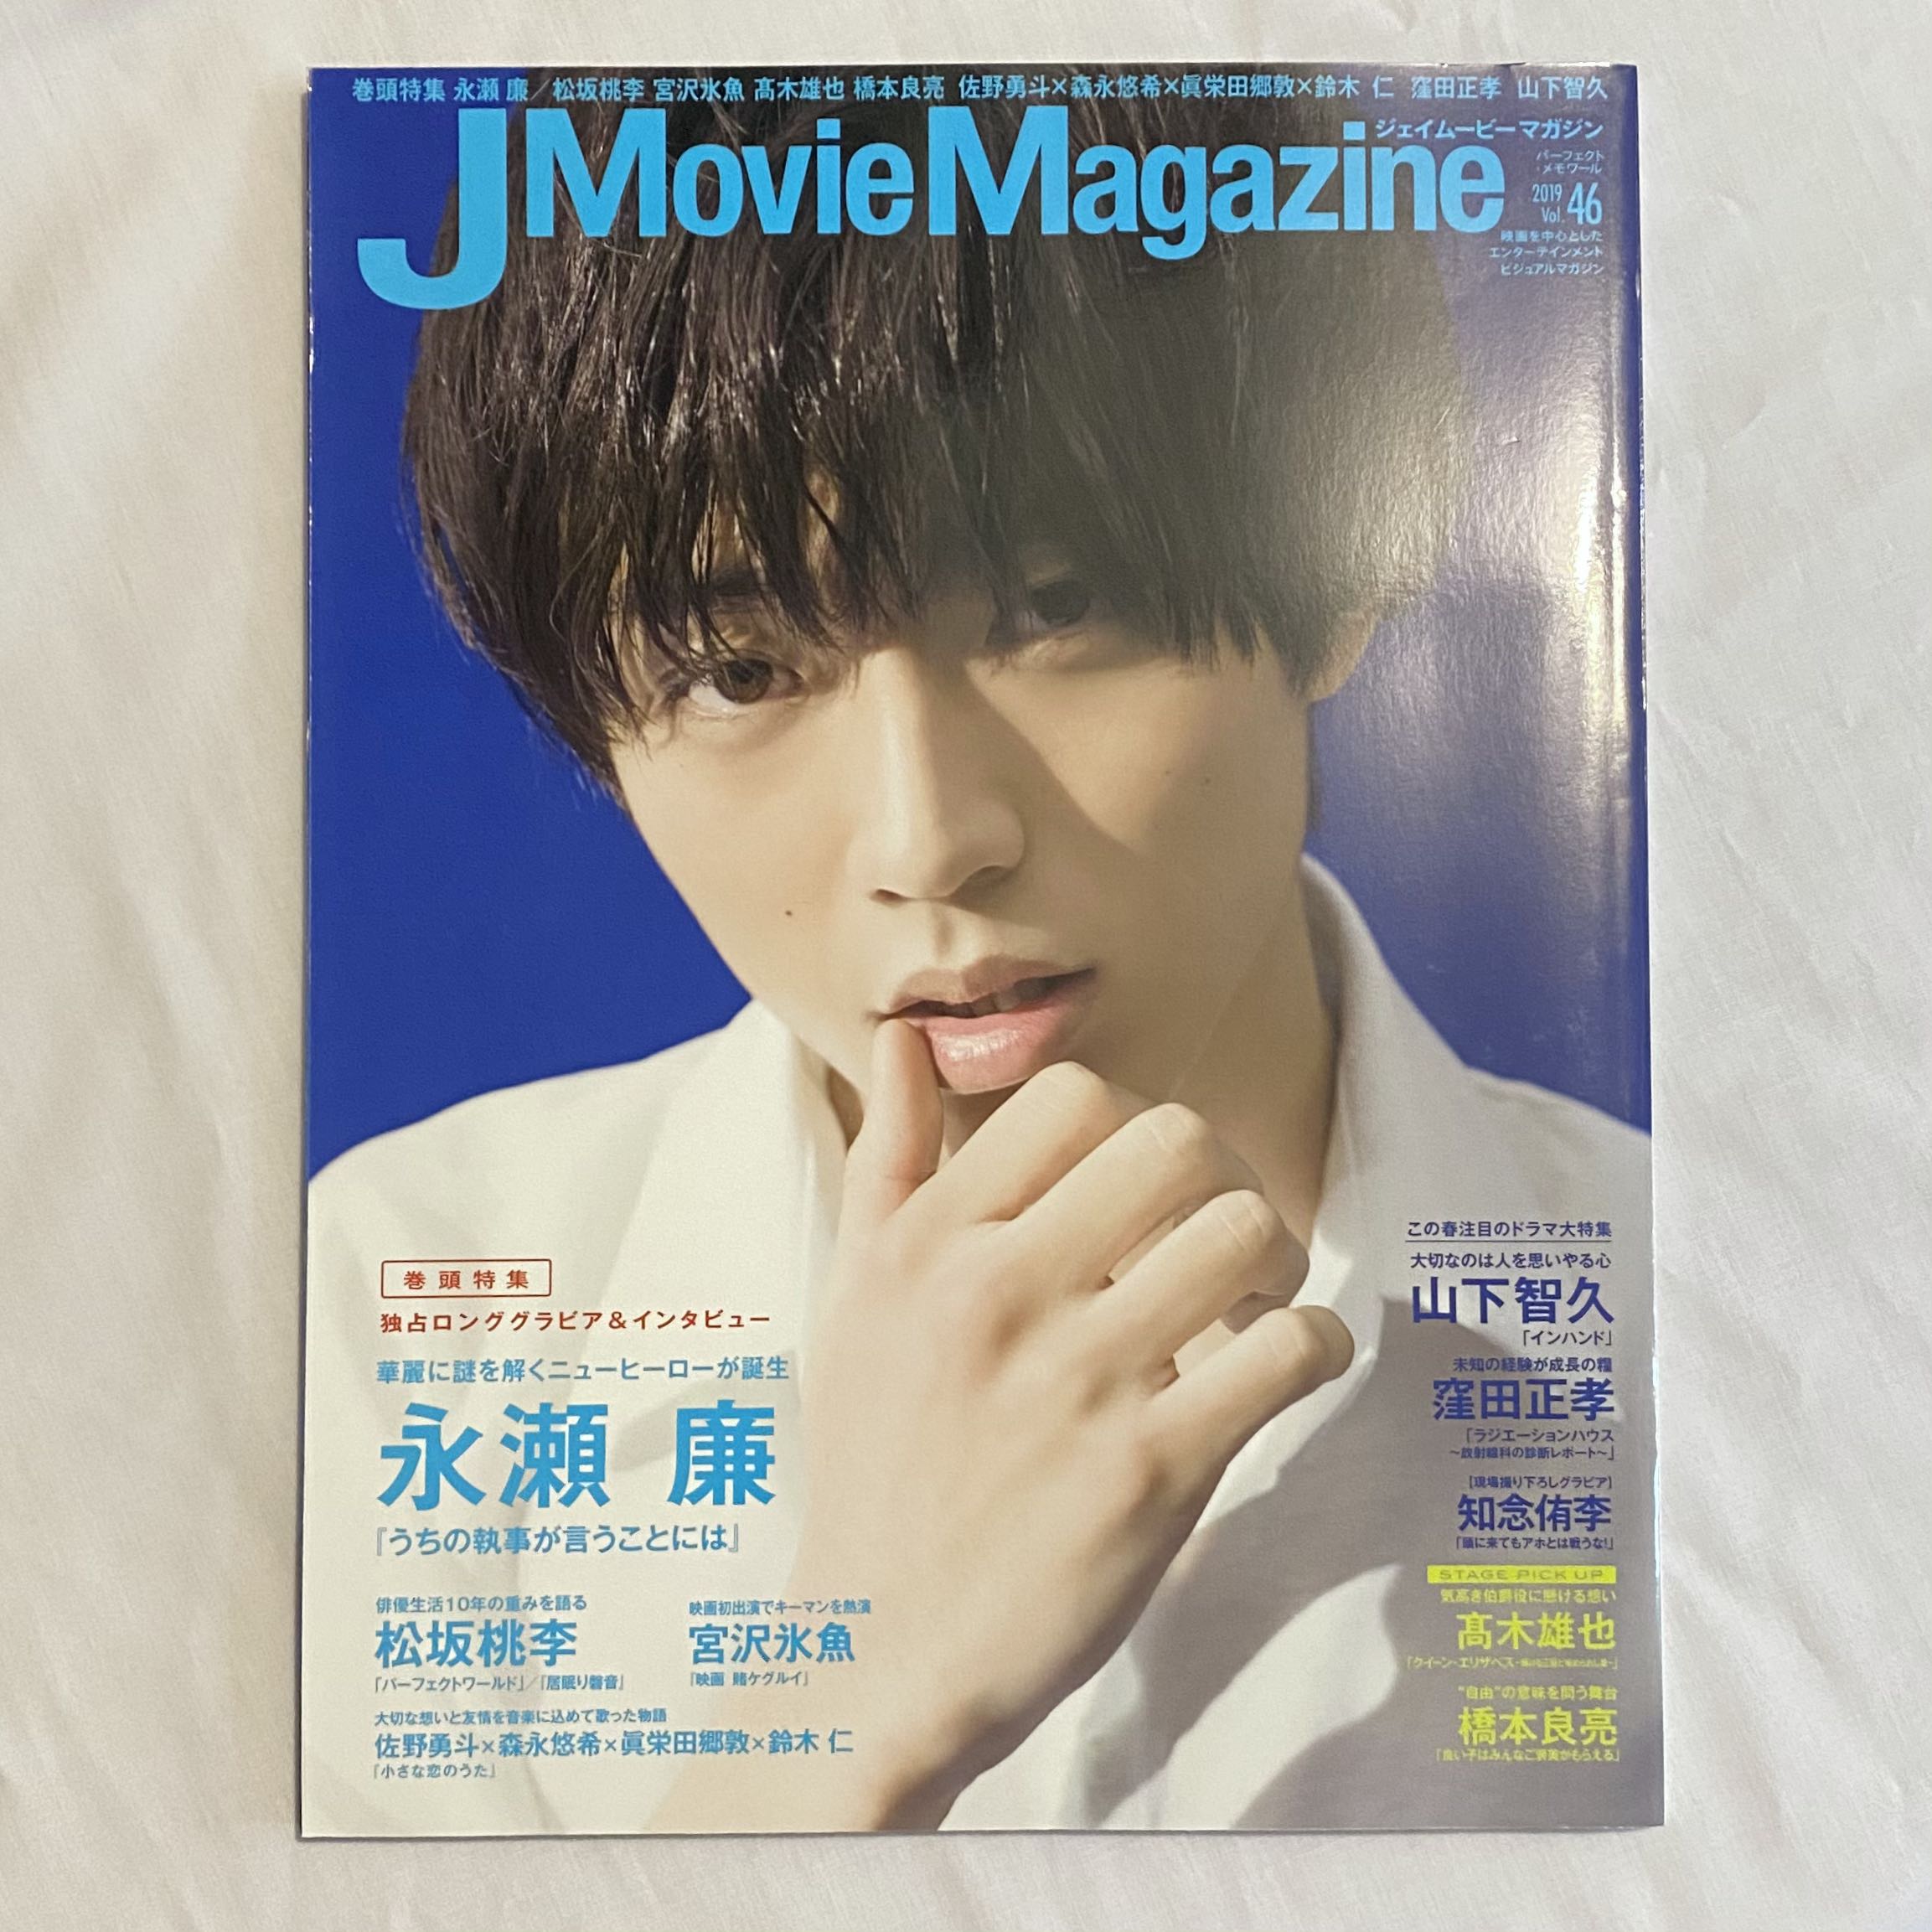 永瀬廉king Prince Jmoviemagazine 19 Vol 46 日本明星 Carousell